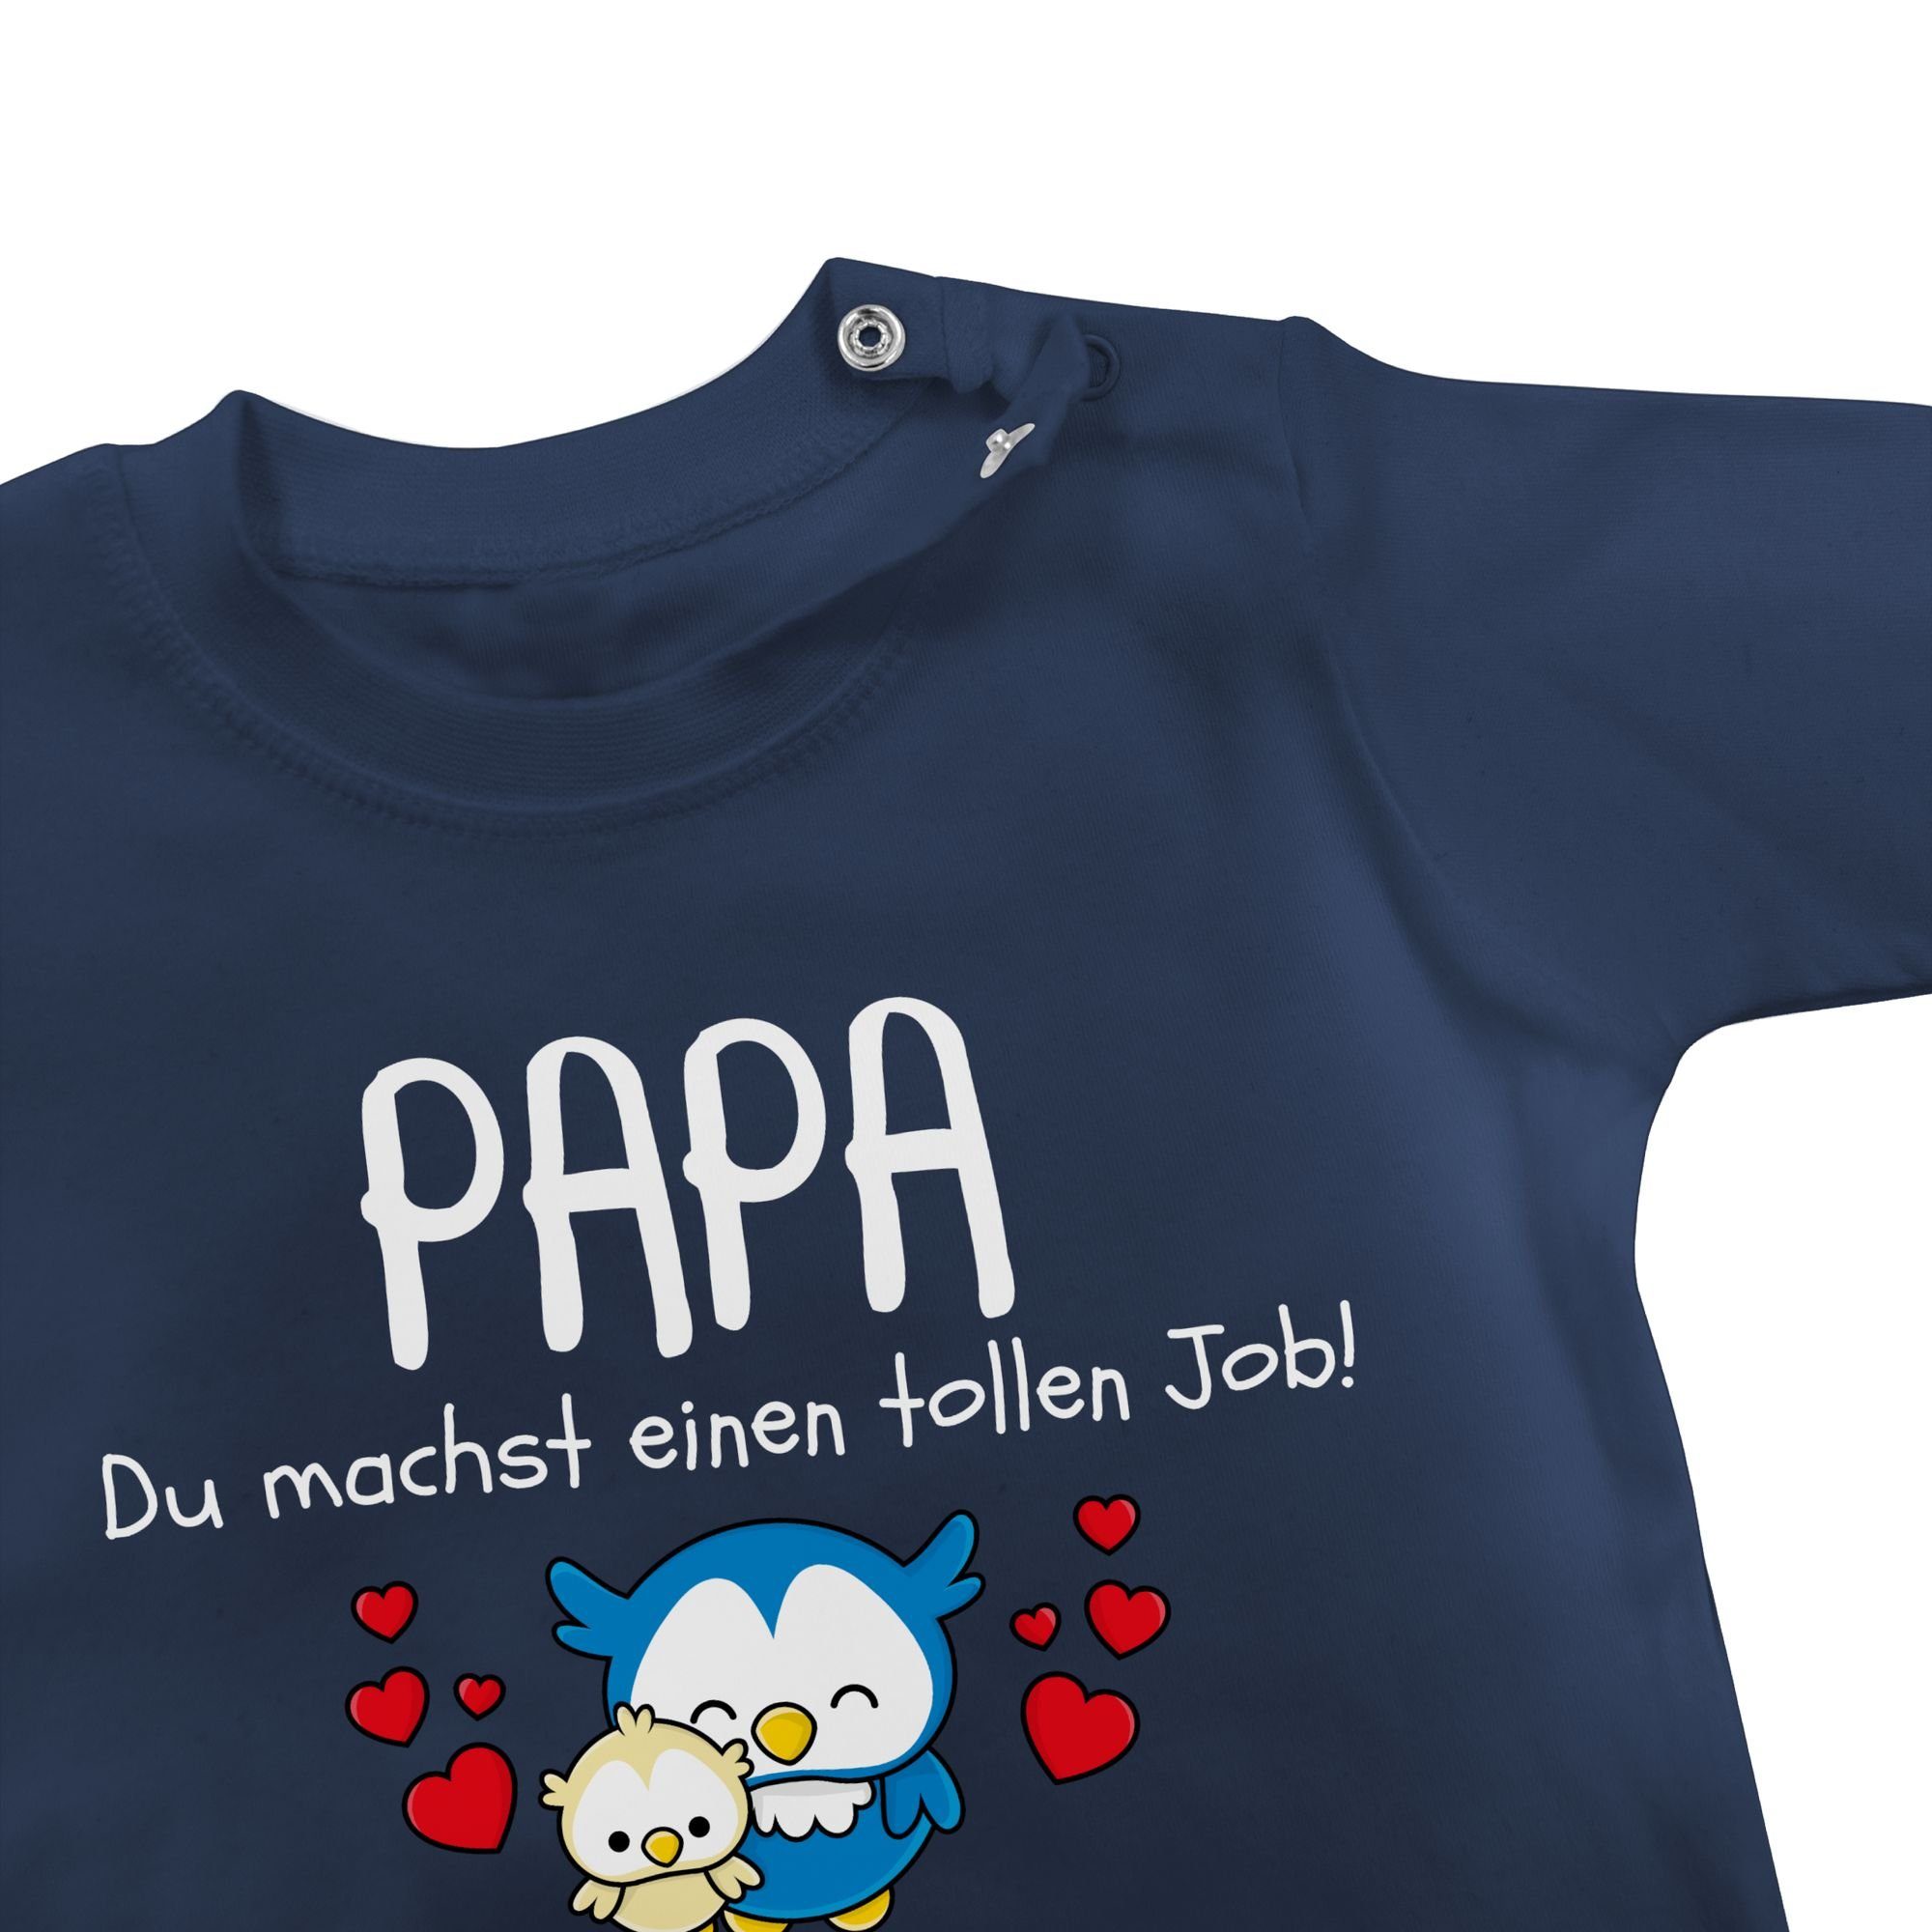 Blau Papa 1. Navy 1 tollen Vatertag Geschenk Shirtracer einen machst T-Shirt - du Job Baby Vatertag